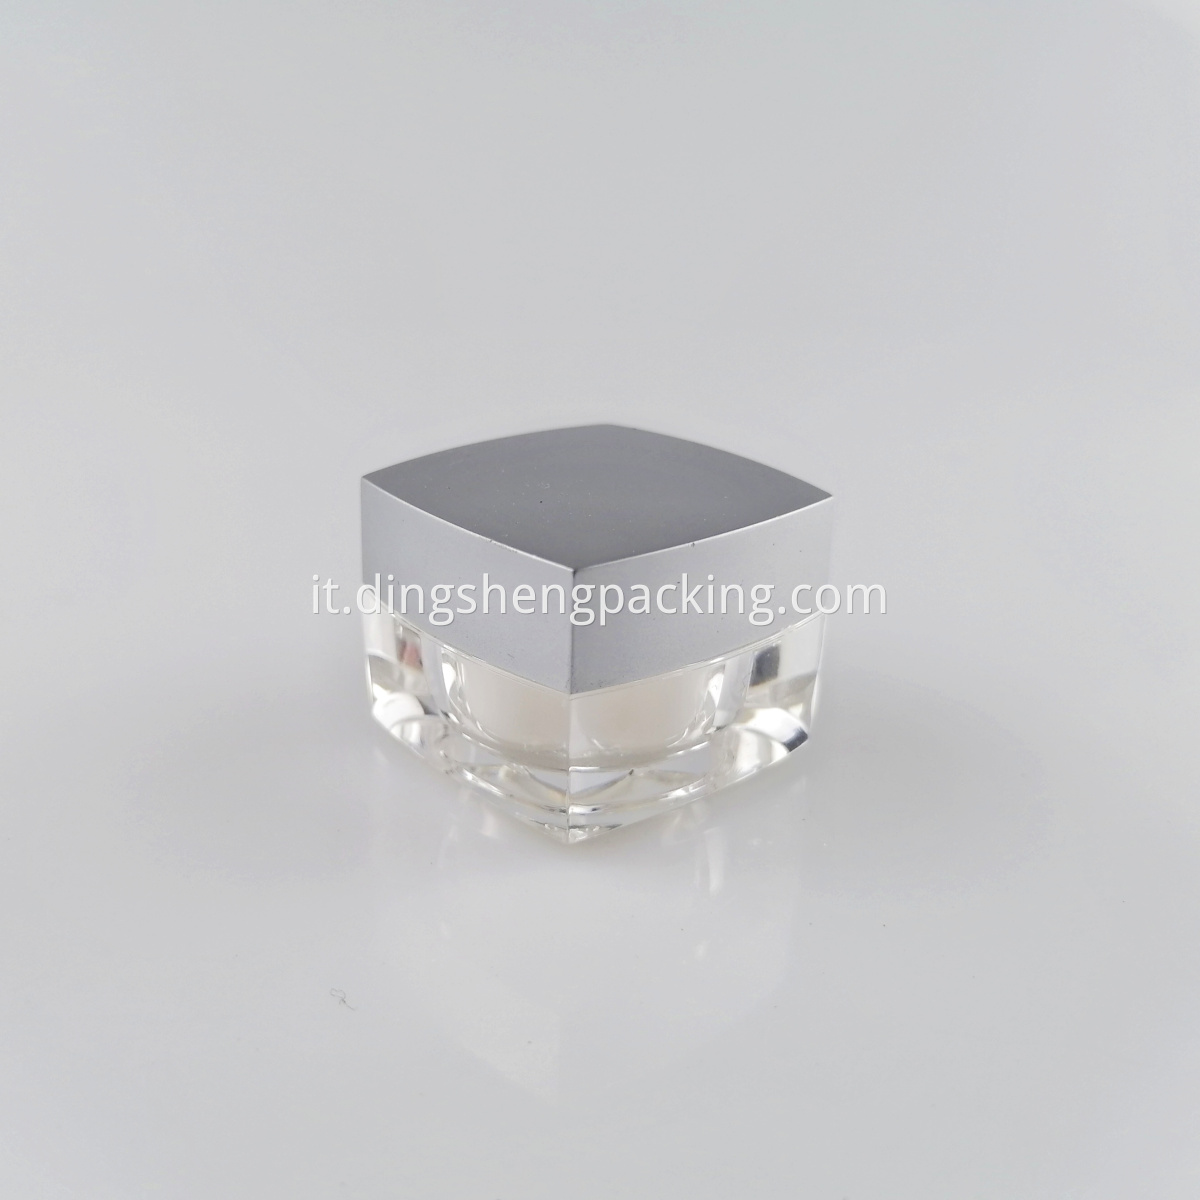 Square Cosmetic Clear Jar 10g Eye Cream Jar